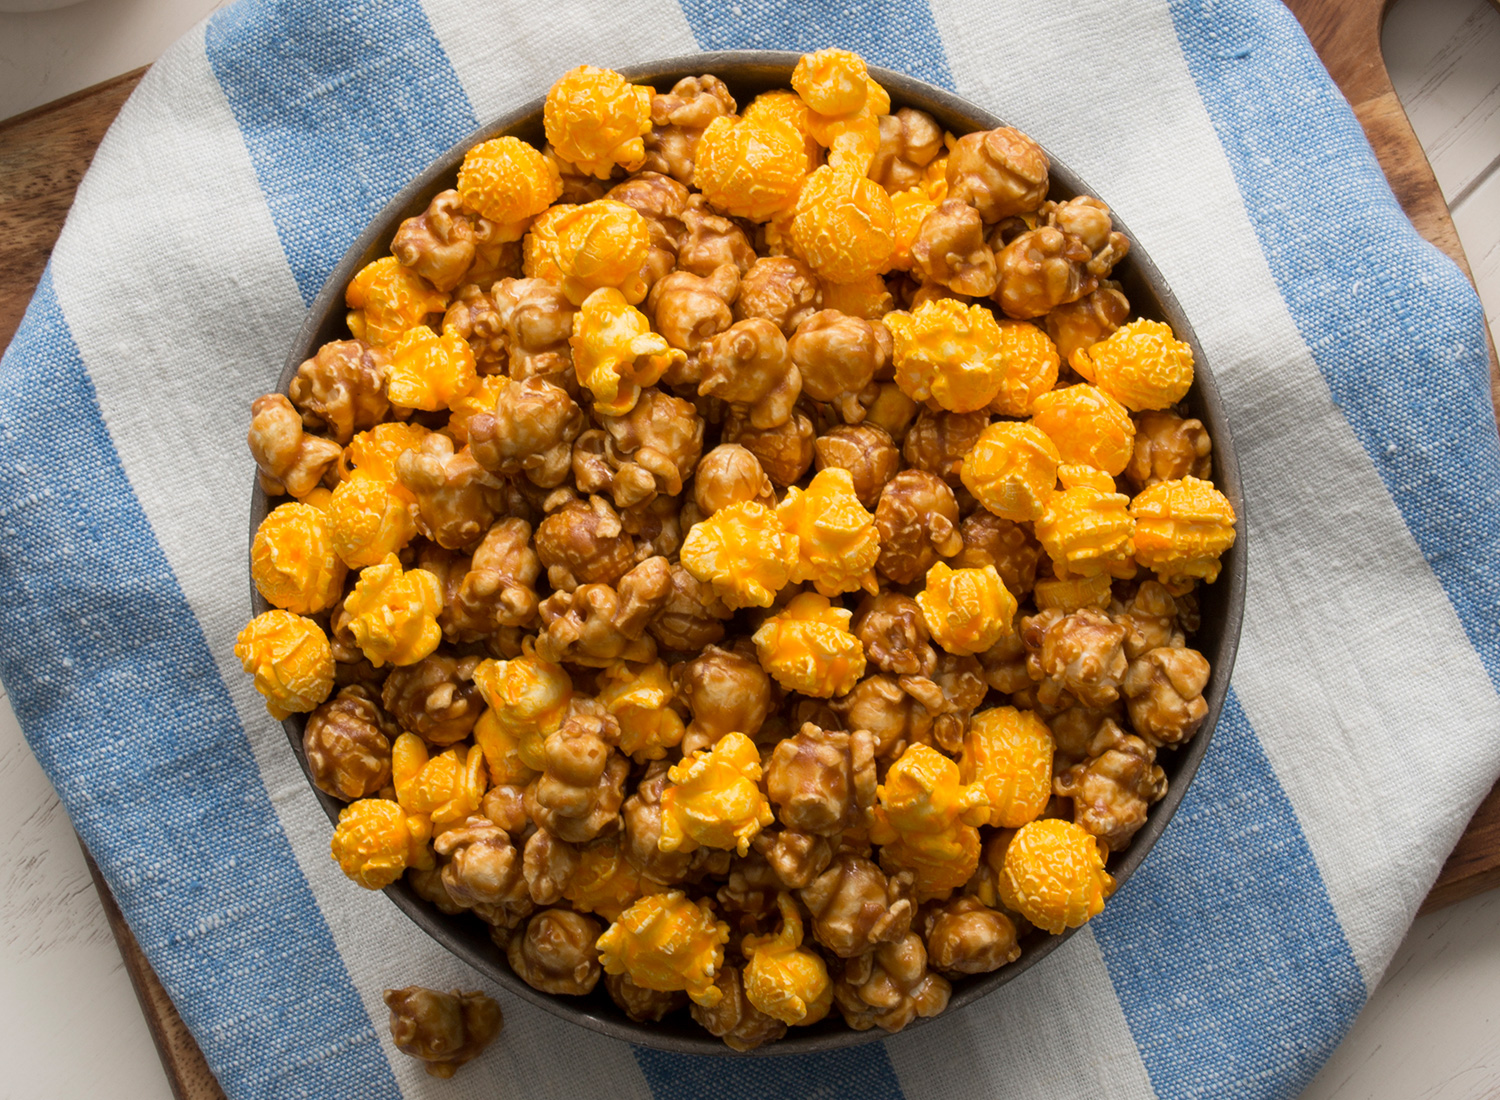 garrets-popcorn-mix